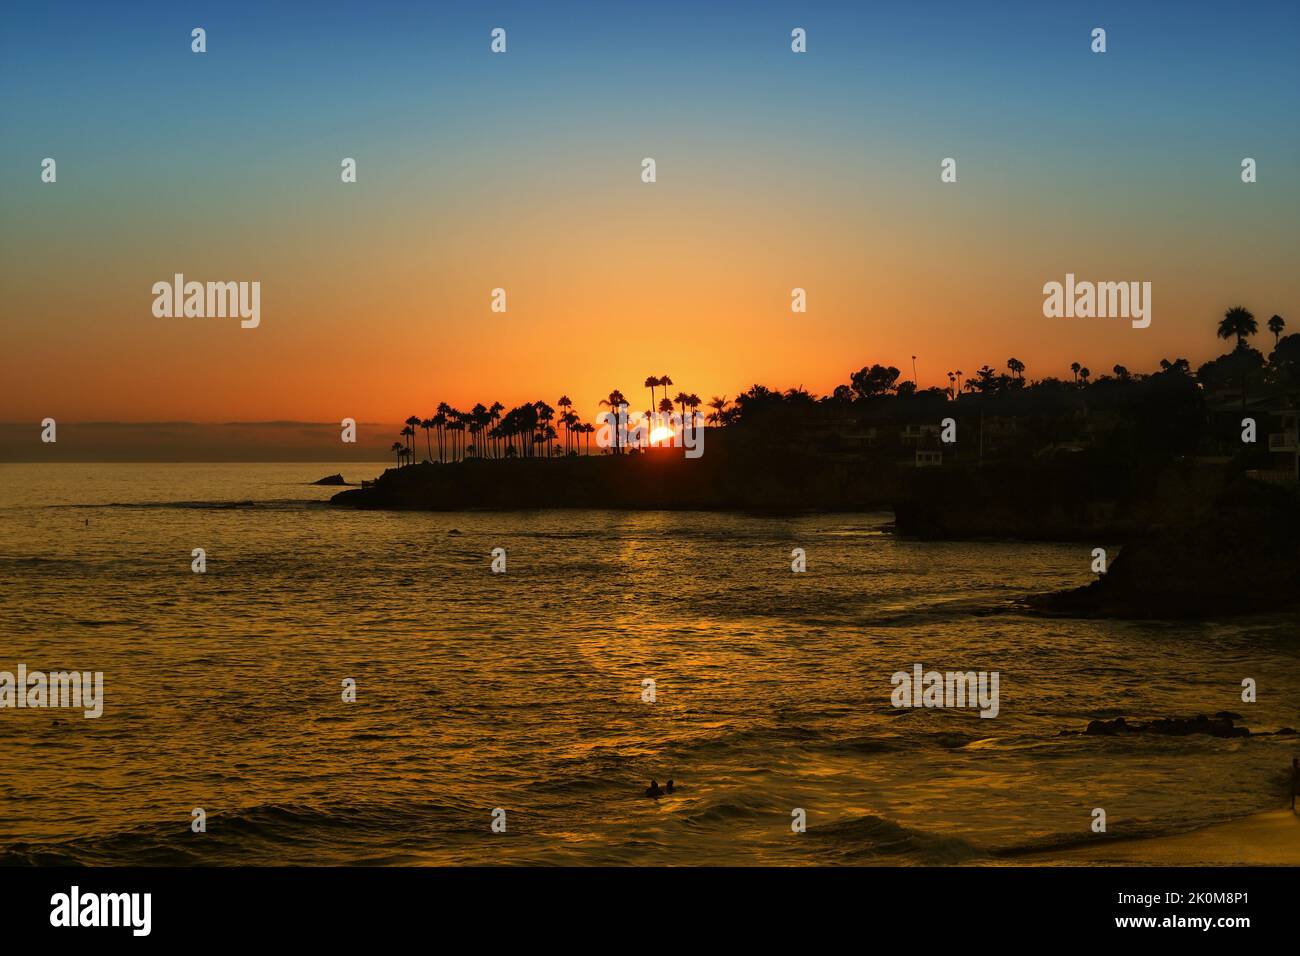 Cadre ensoleillé derrière Twin points, Laguna Beach, Californie, avec vue sur Fishermans Cove, Shaws Cove et divers Cove. Banque D'Images